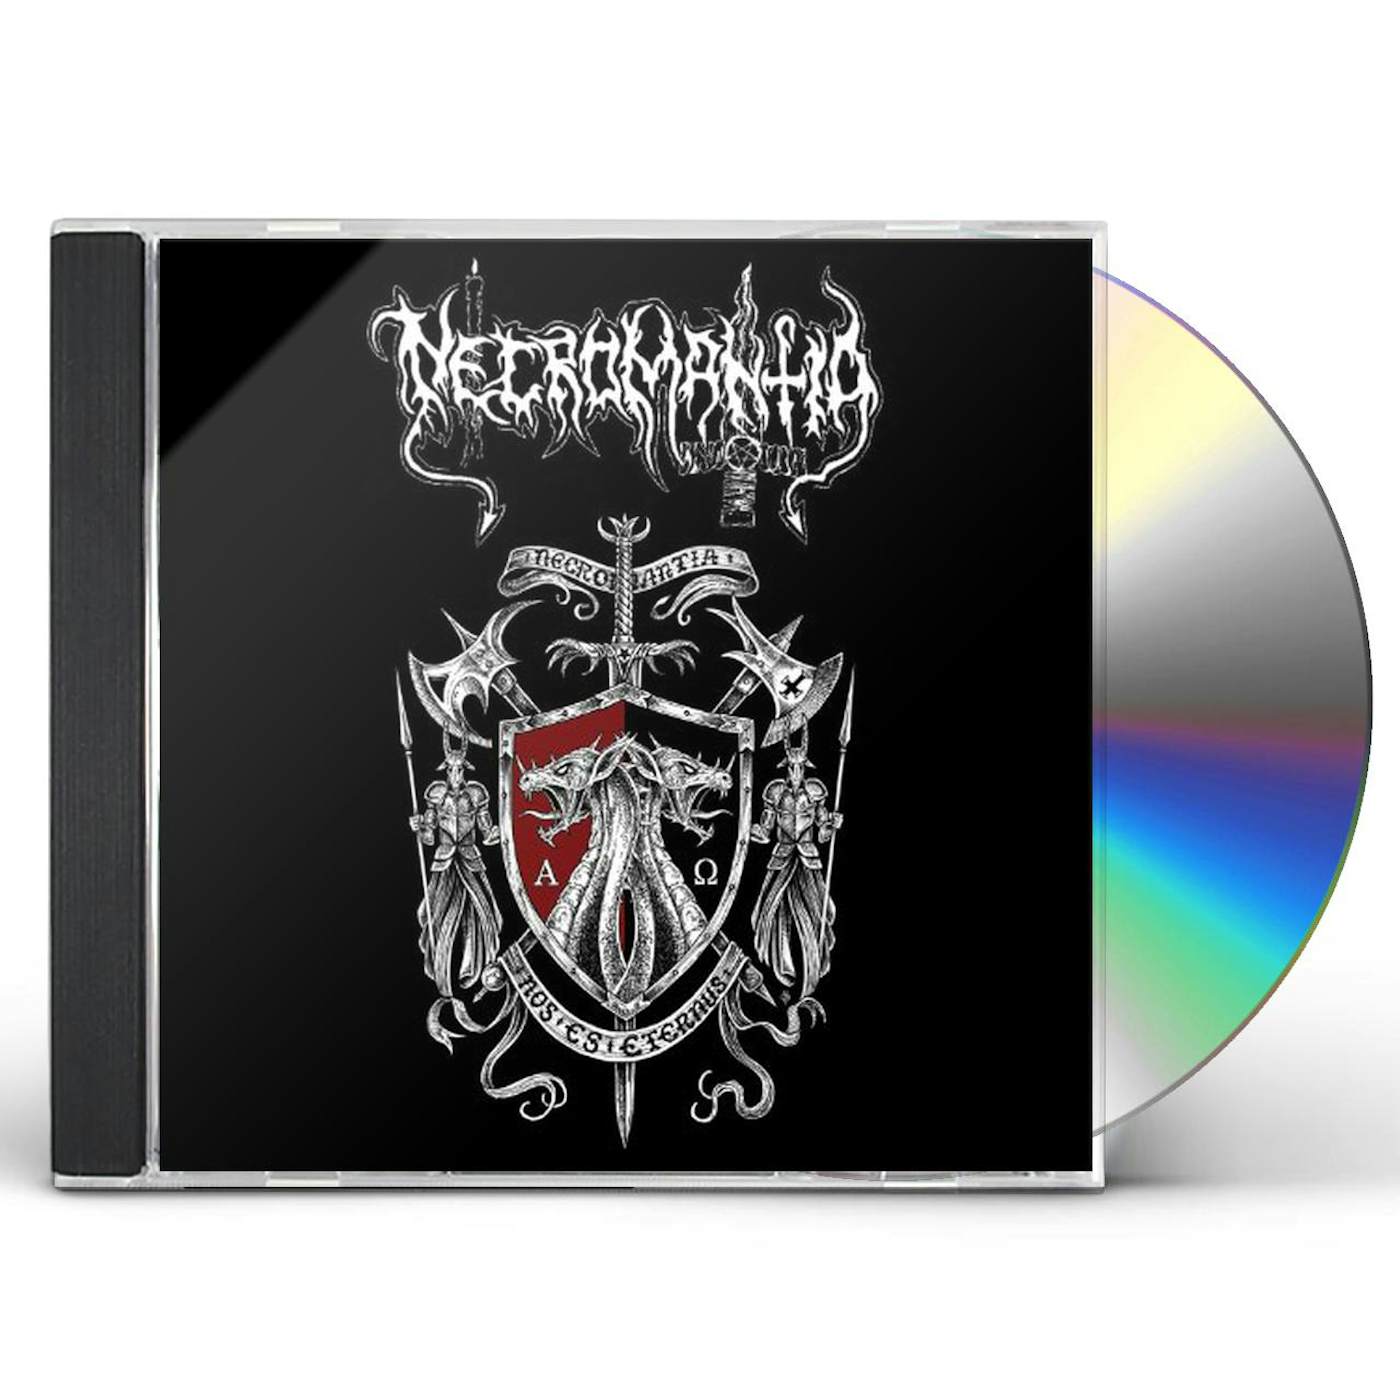 Necromantia NEKROMANTEION: A COLLECTION OF ARCANE HEXES CD